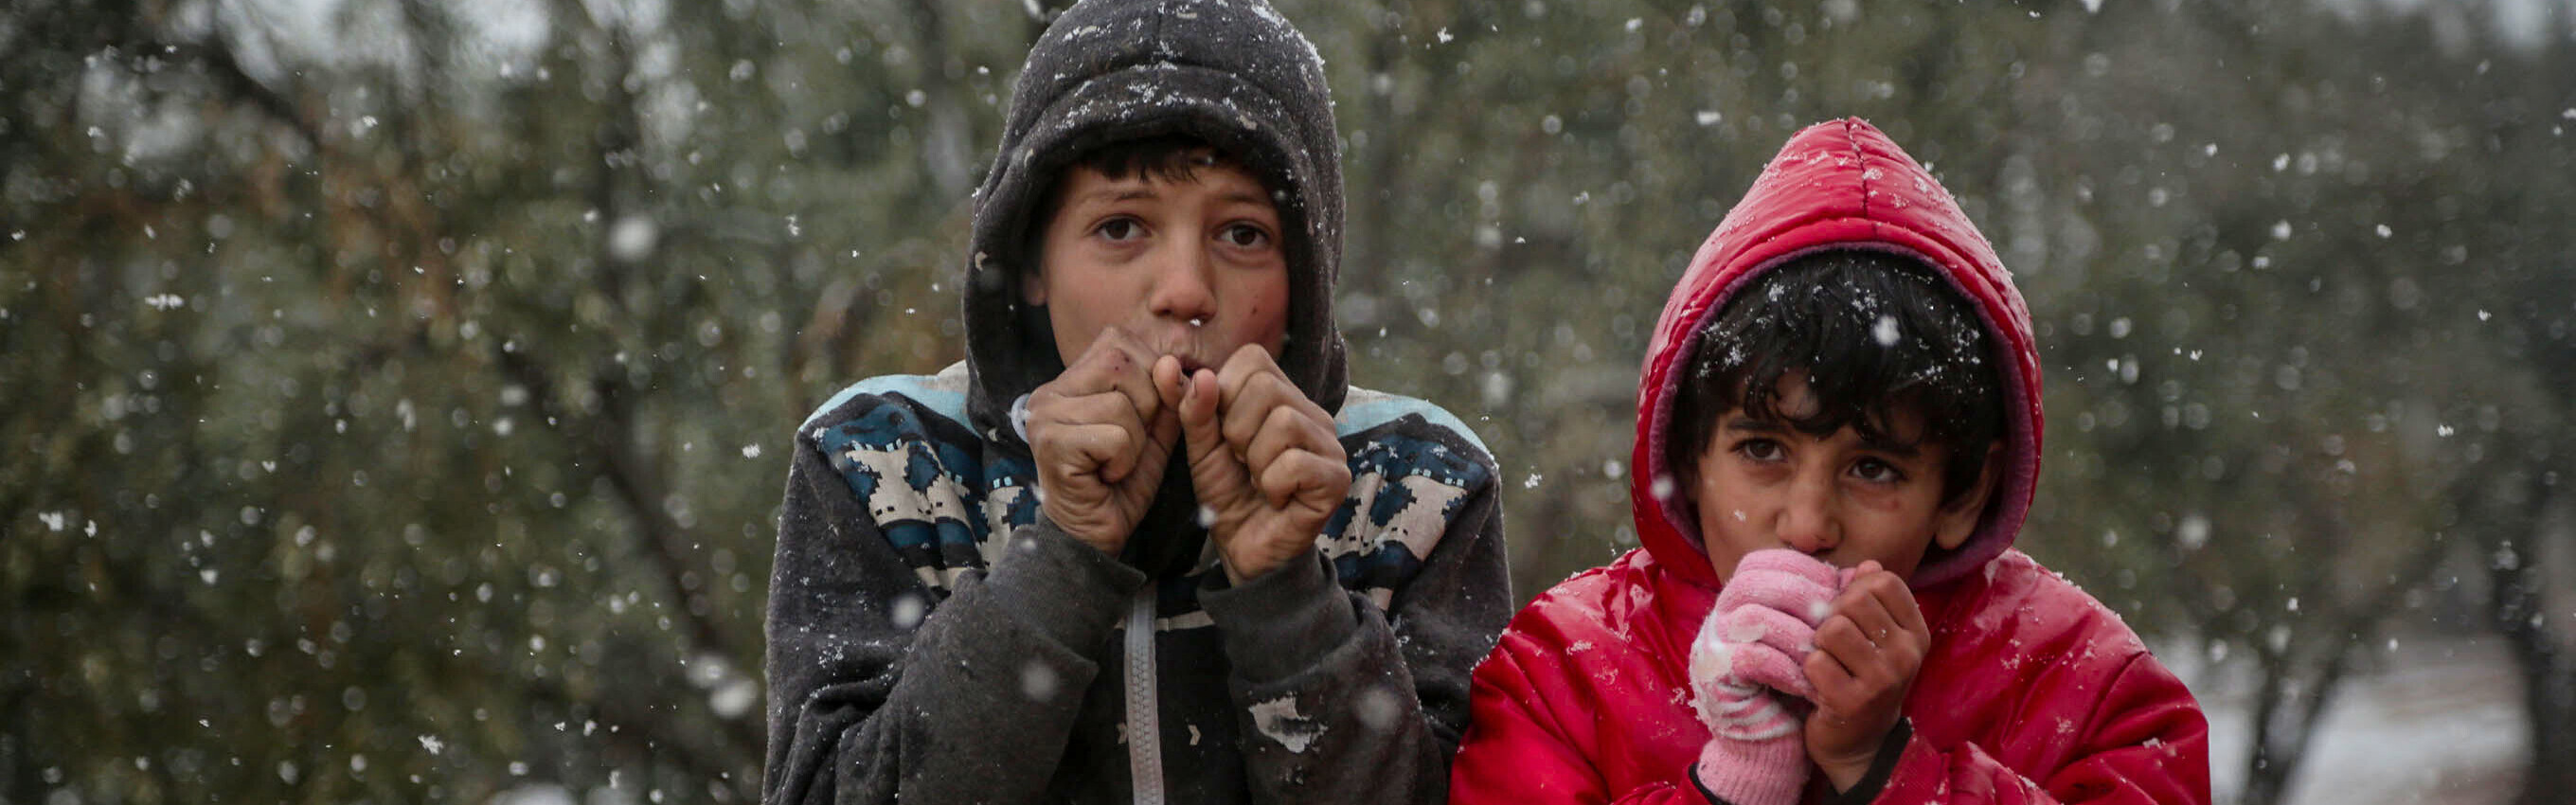 Zwei Kinder während der kalten Wintermonate in Syrien